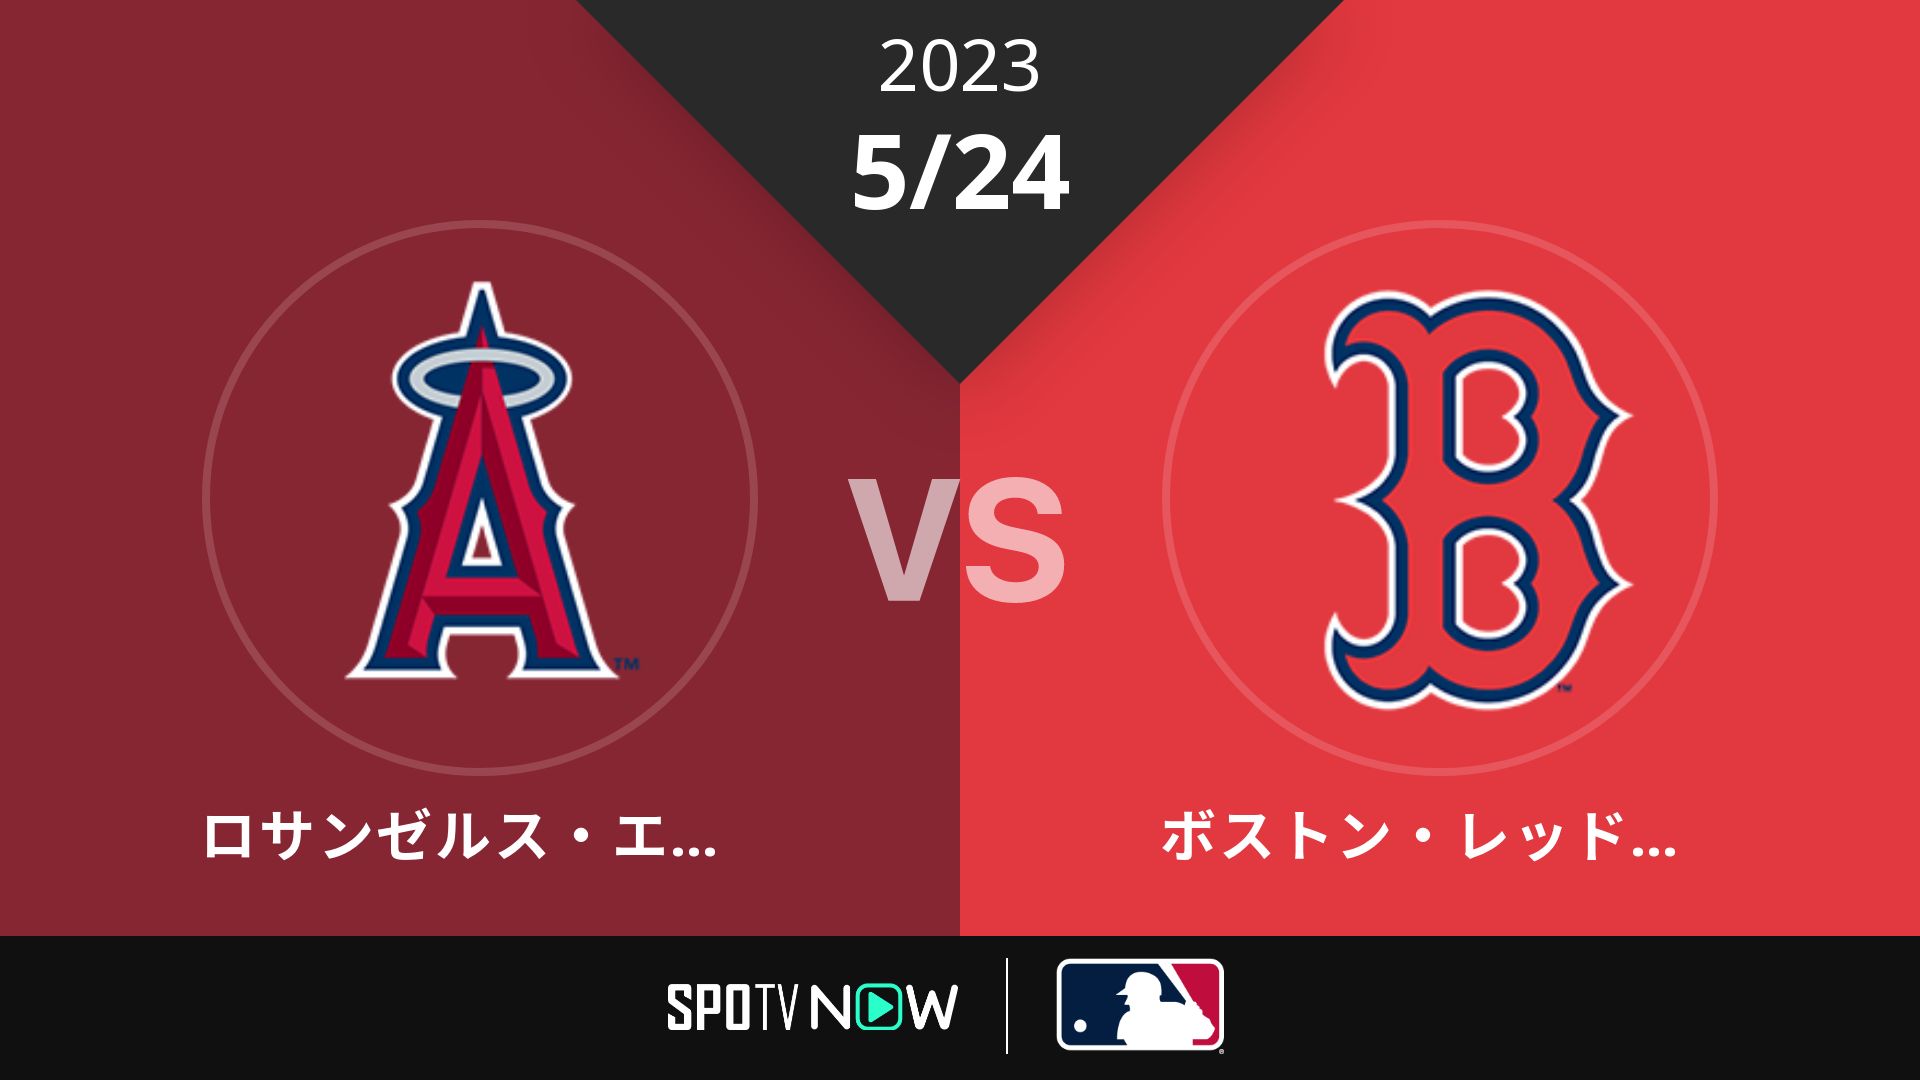 2023/5/24 エンゼルス vs Rソックス [MLB]